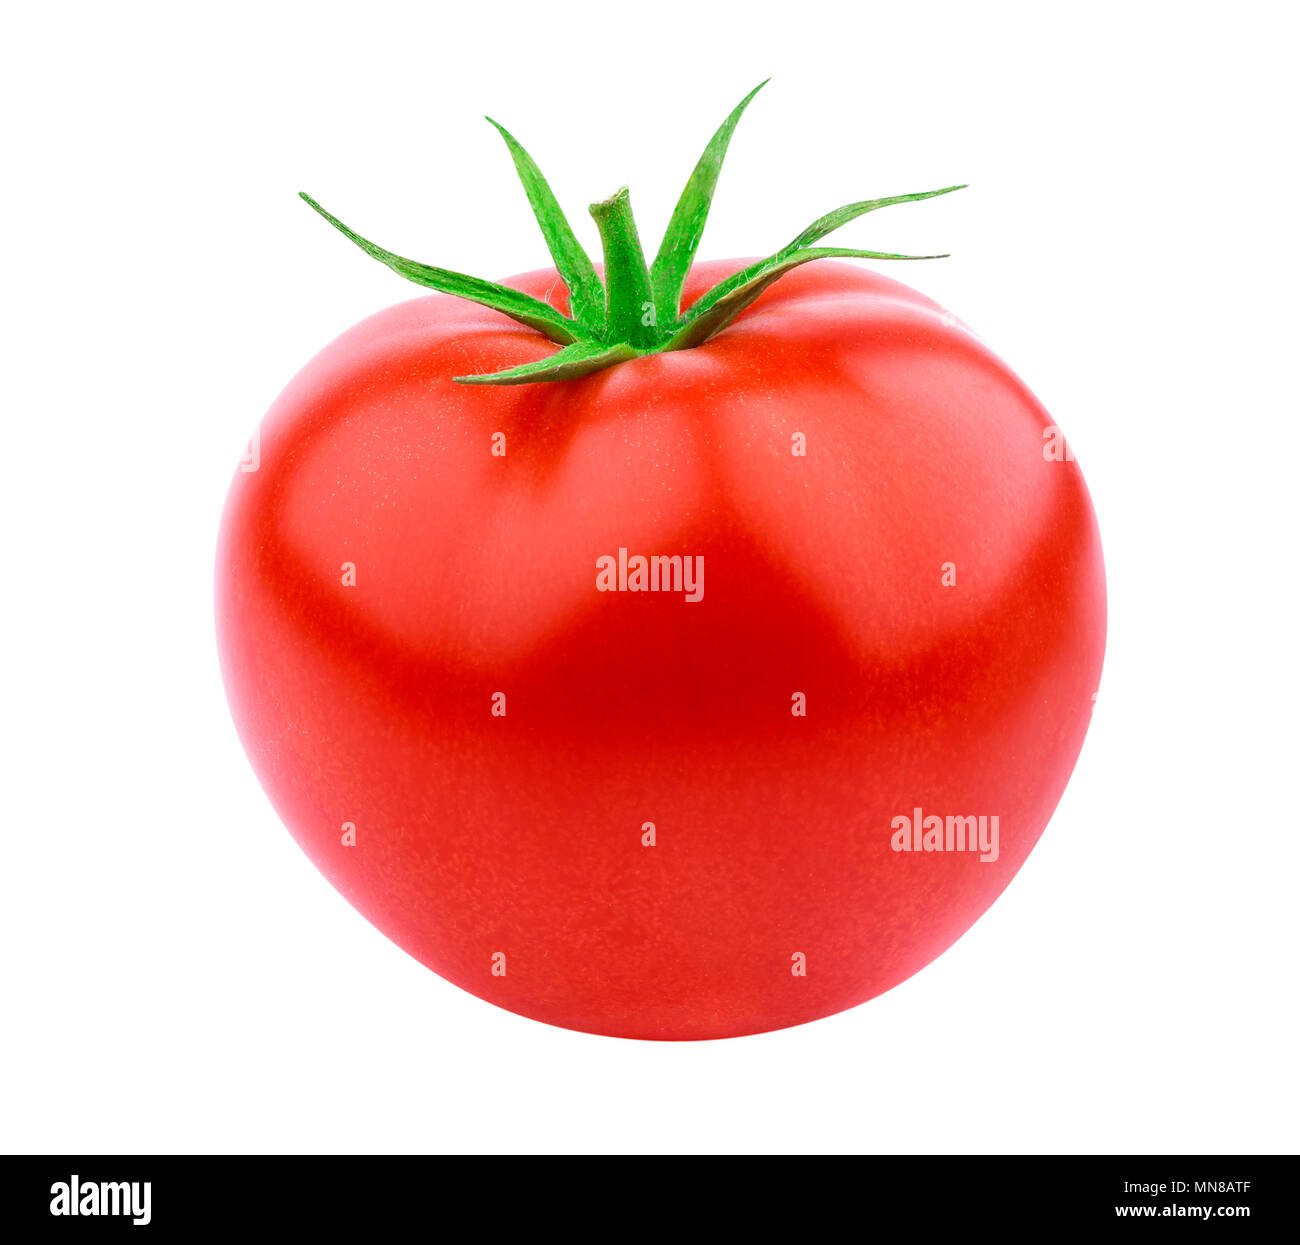 One whole tomato isolated isolated on white background Stock Photo